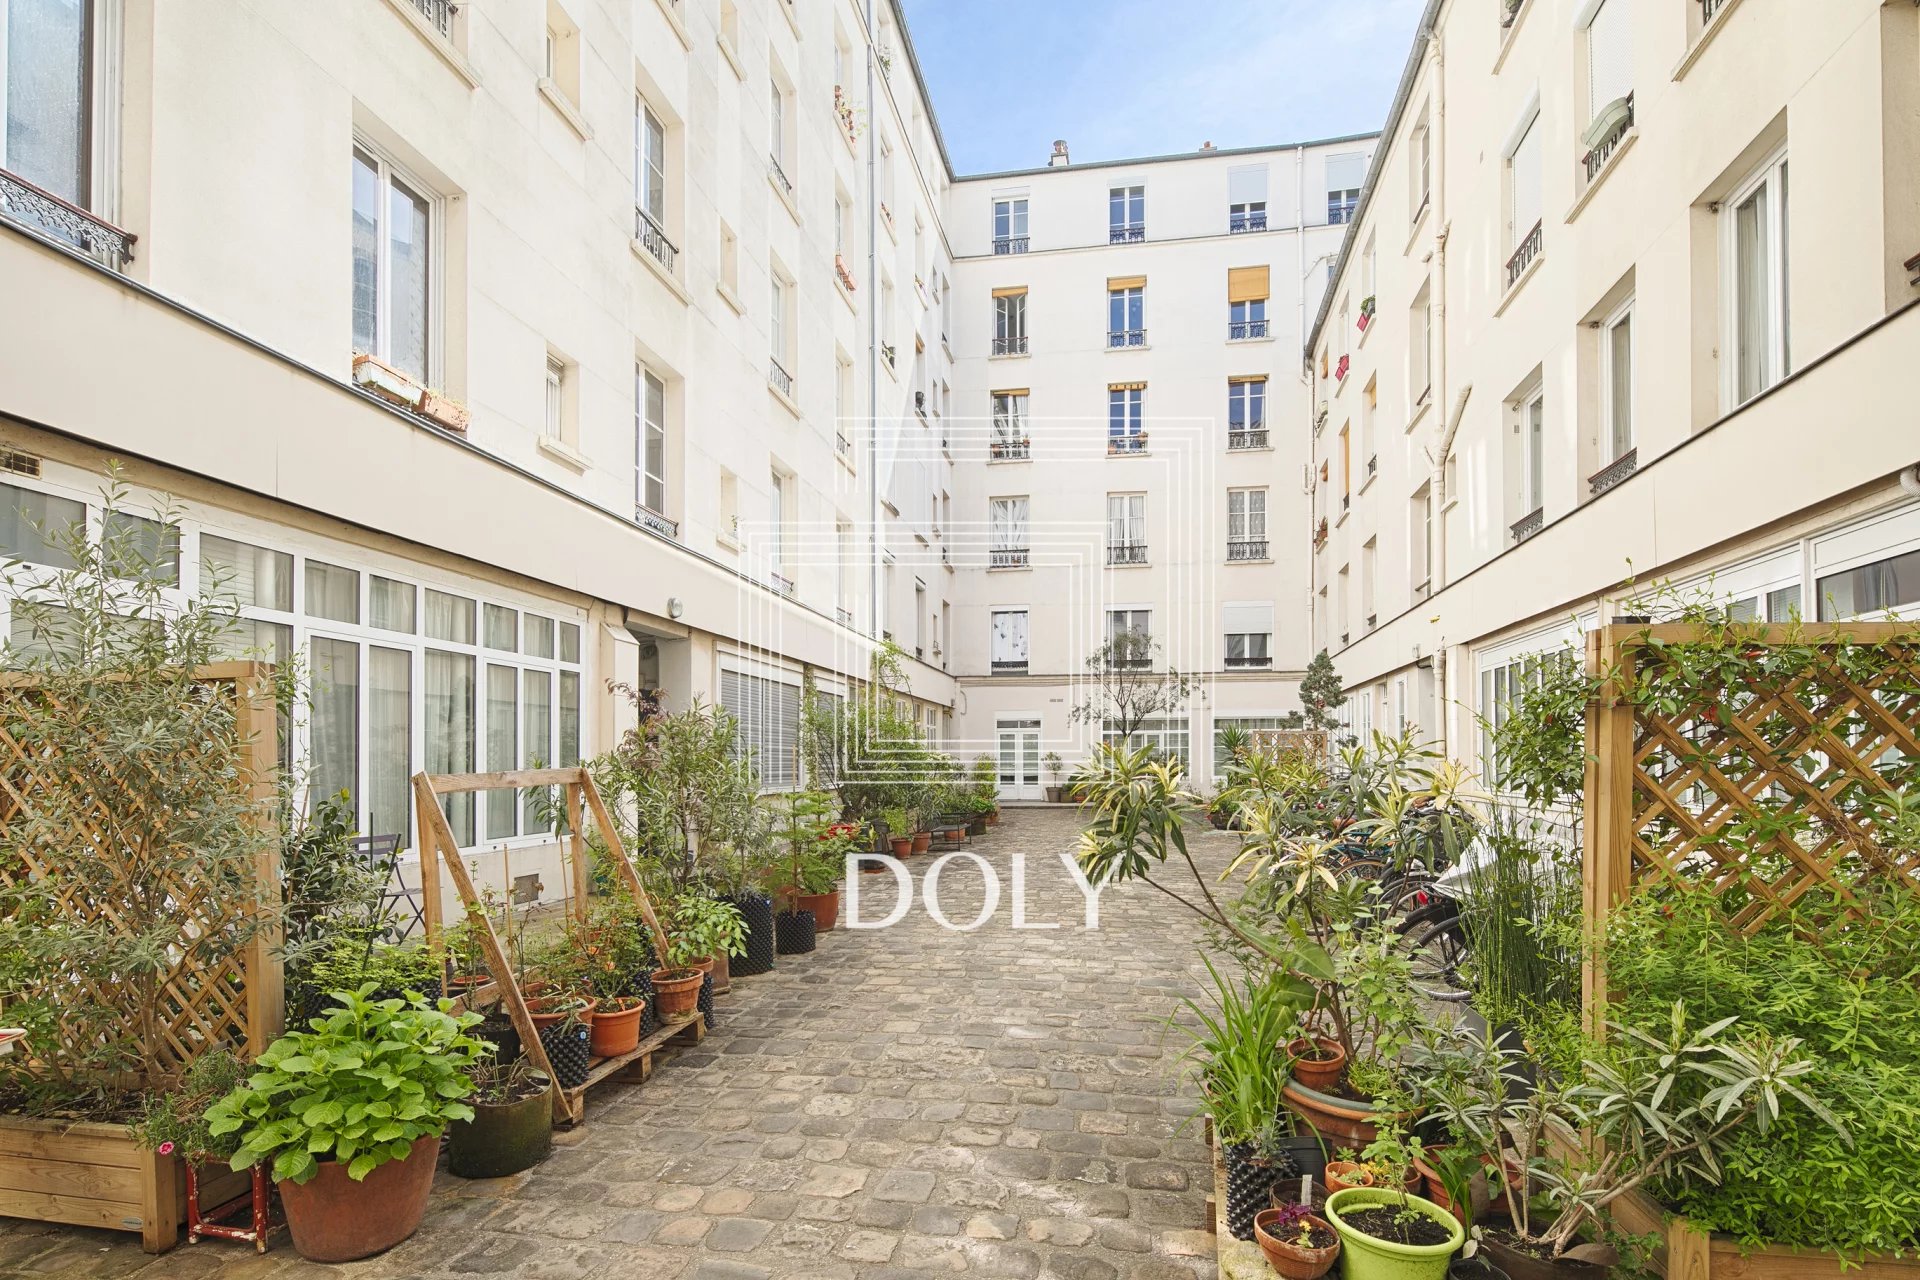 Appartement 2 pièces 34.4m2 // République-St Ambroise // 75011 Paris